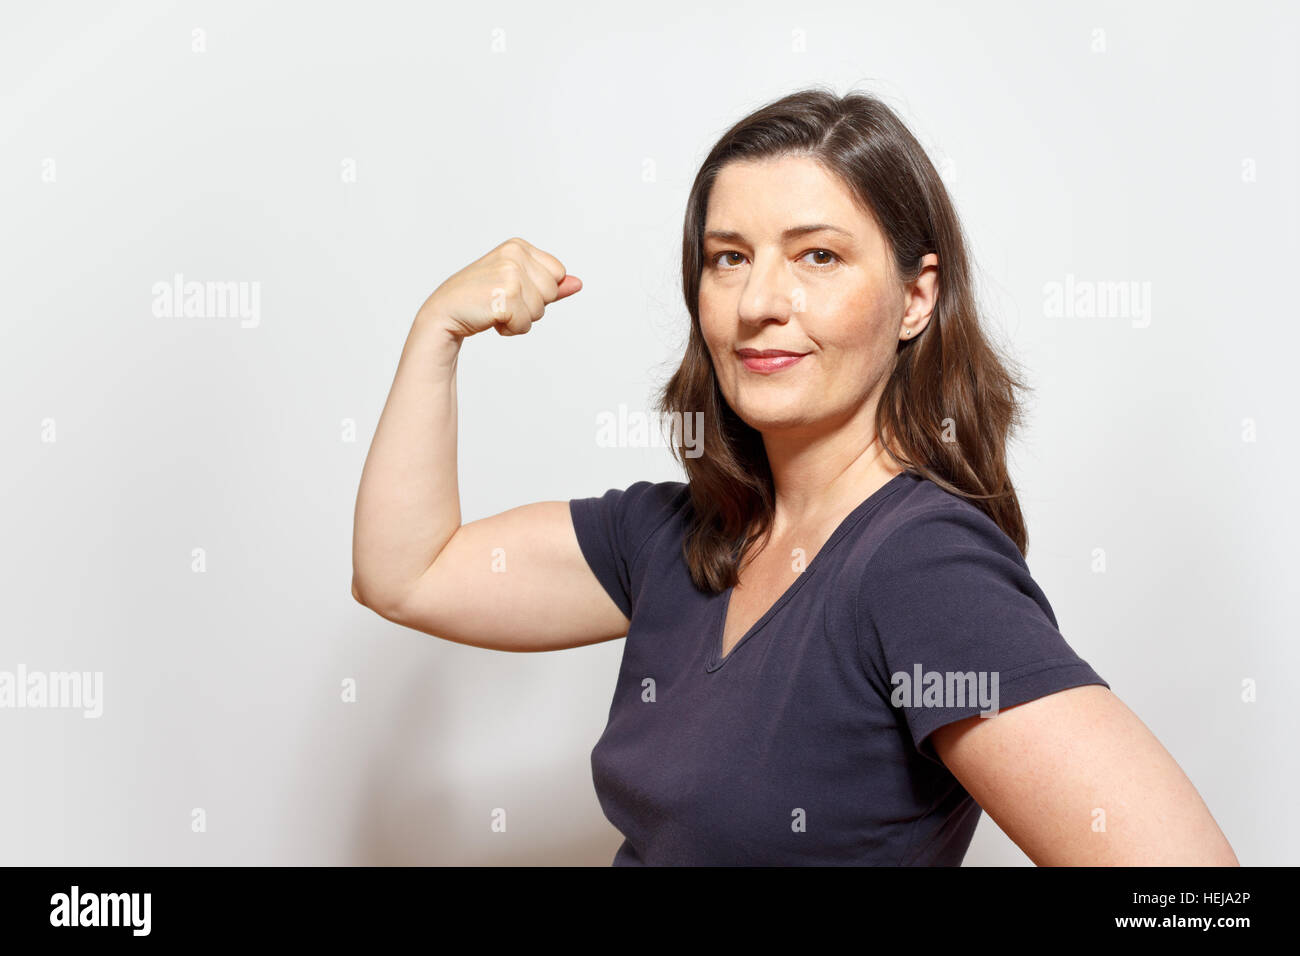 Applying Frau ihr Bizeps Muskeln, zeigt Selbstbewusstsein und stolz, weißer Hintergrund, Kopie oder Text Platz, Exemplar Stockfoto